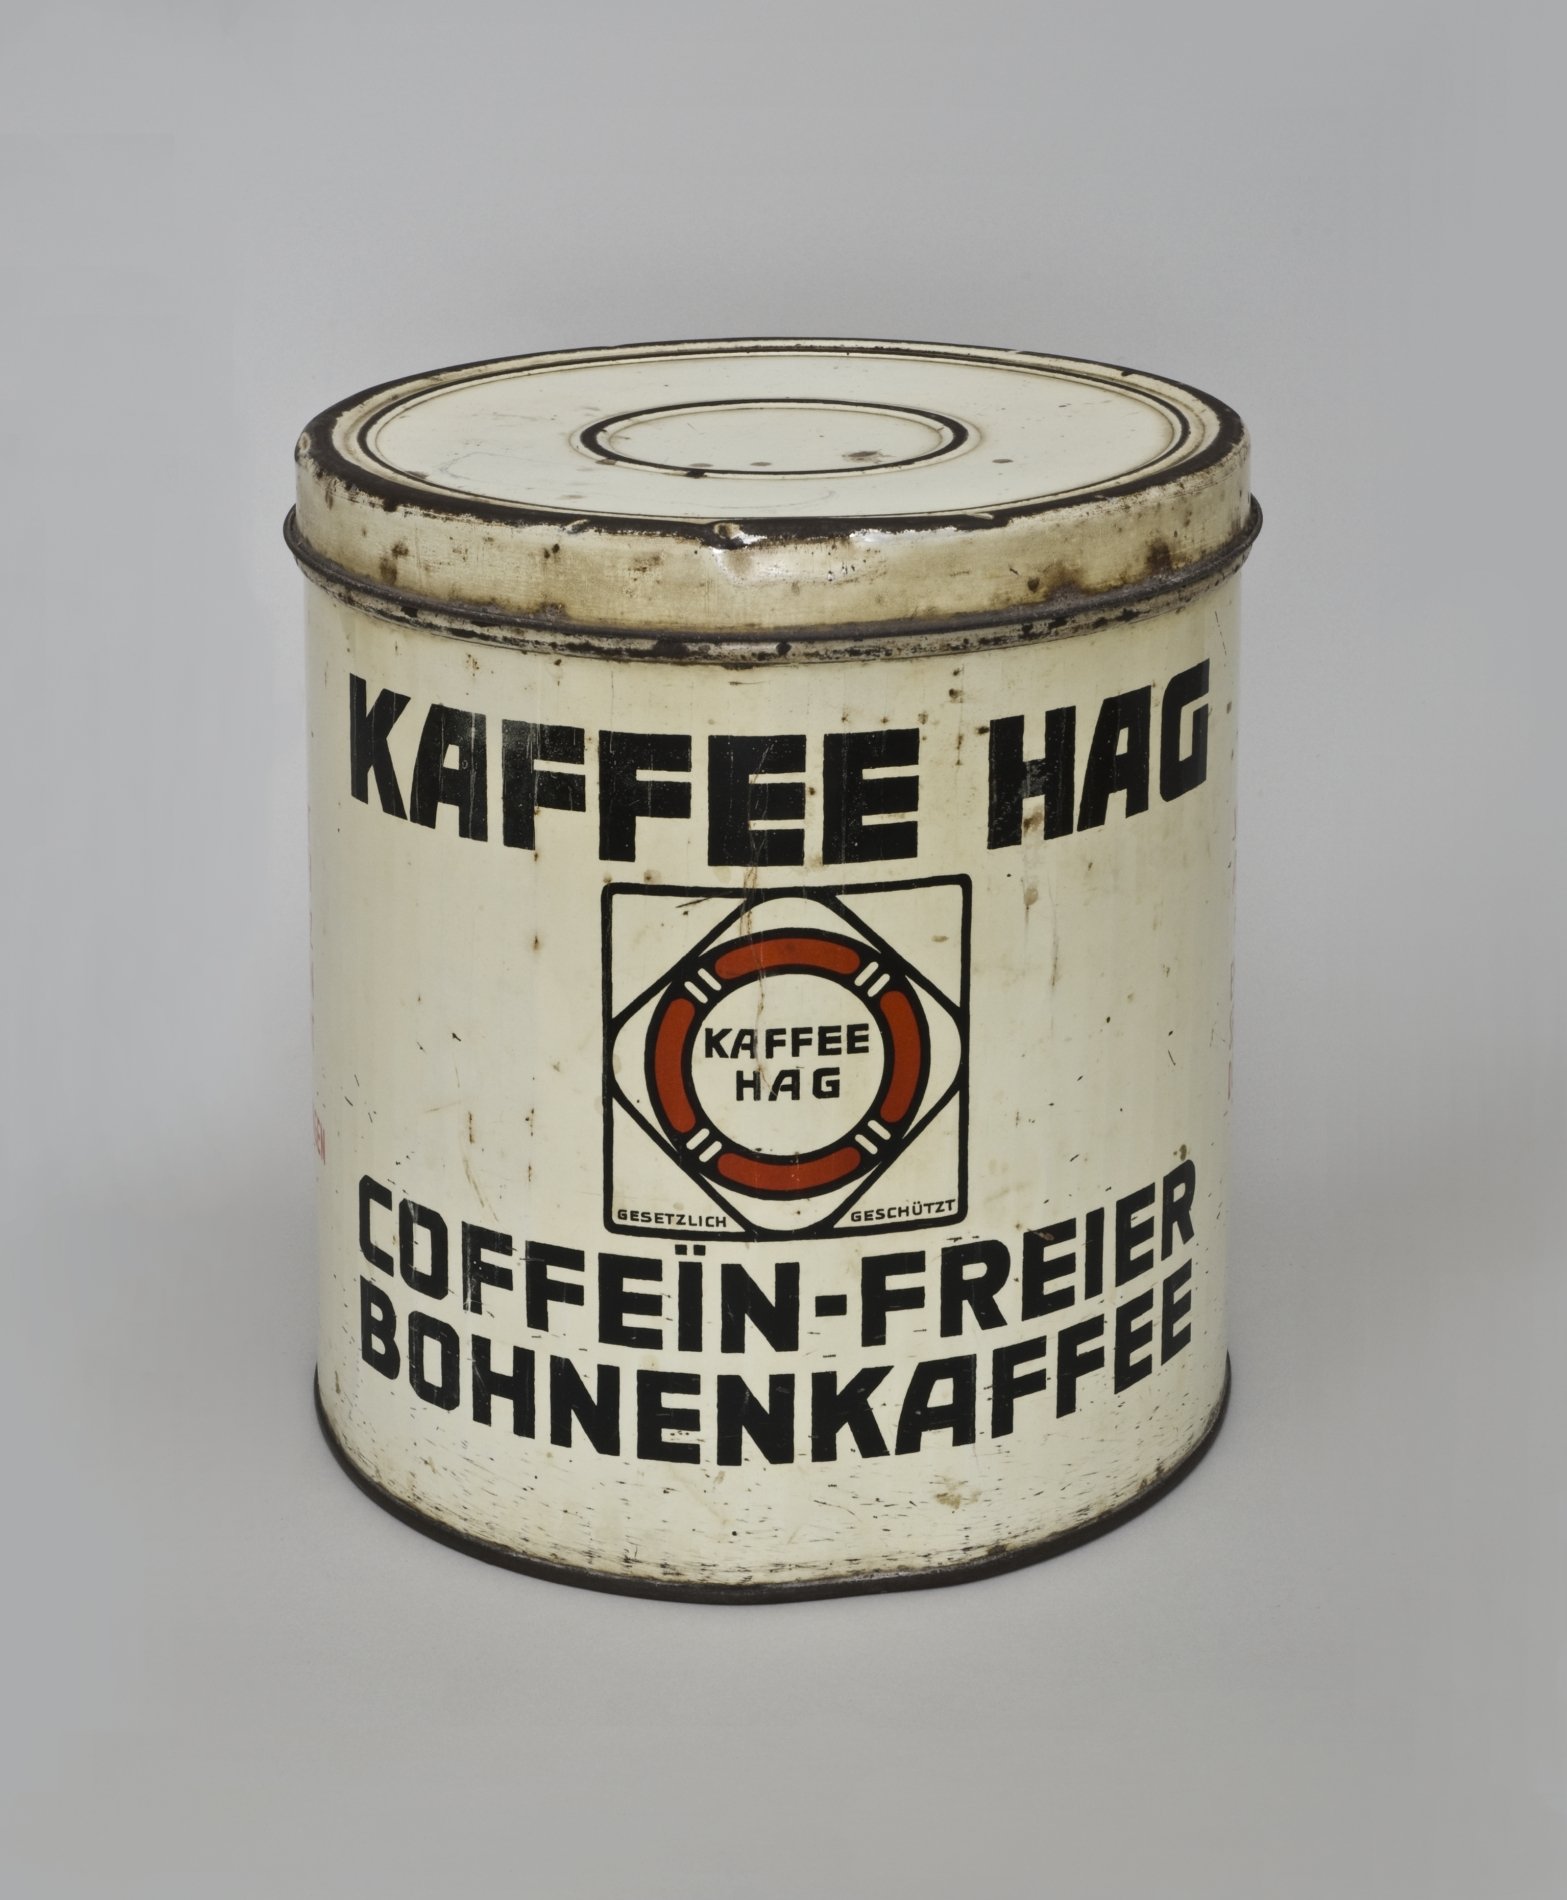 Verkaufs- und Vorratsdose "Kaffee Hag" (Stiftung Domäne Dahlem - Landgut und Museum, Weiternutzung nur mit Genehmigung des Museums CC BY-NC-SA)